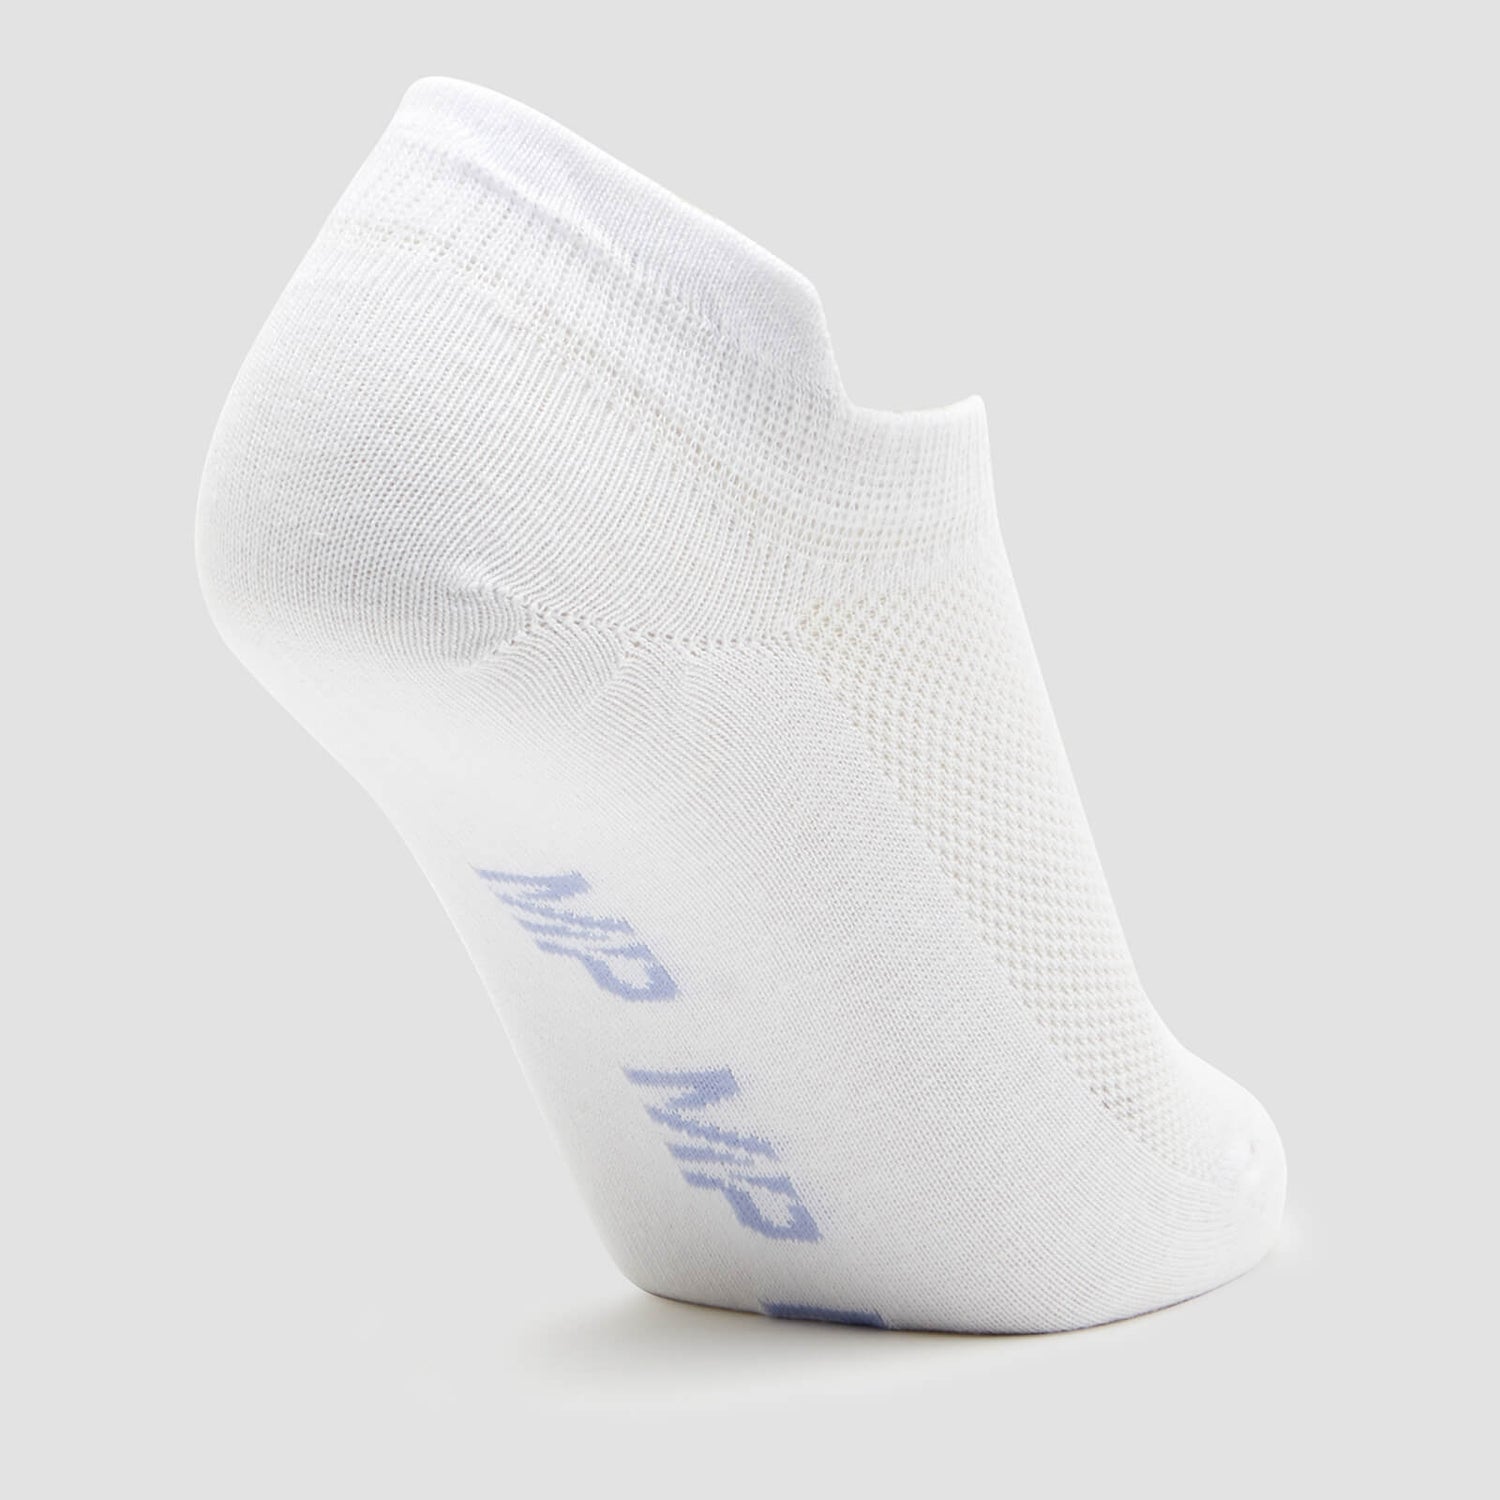 MP Women's Ankle Socks - White/Neon (3 Pack) - UK 3-6